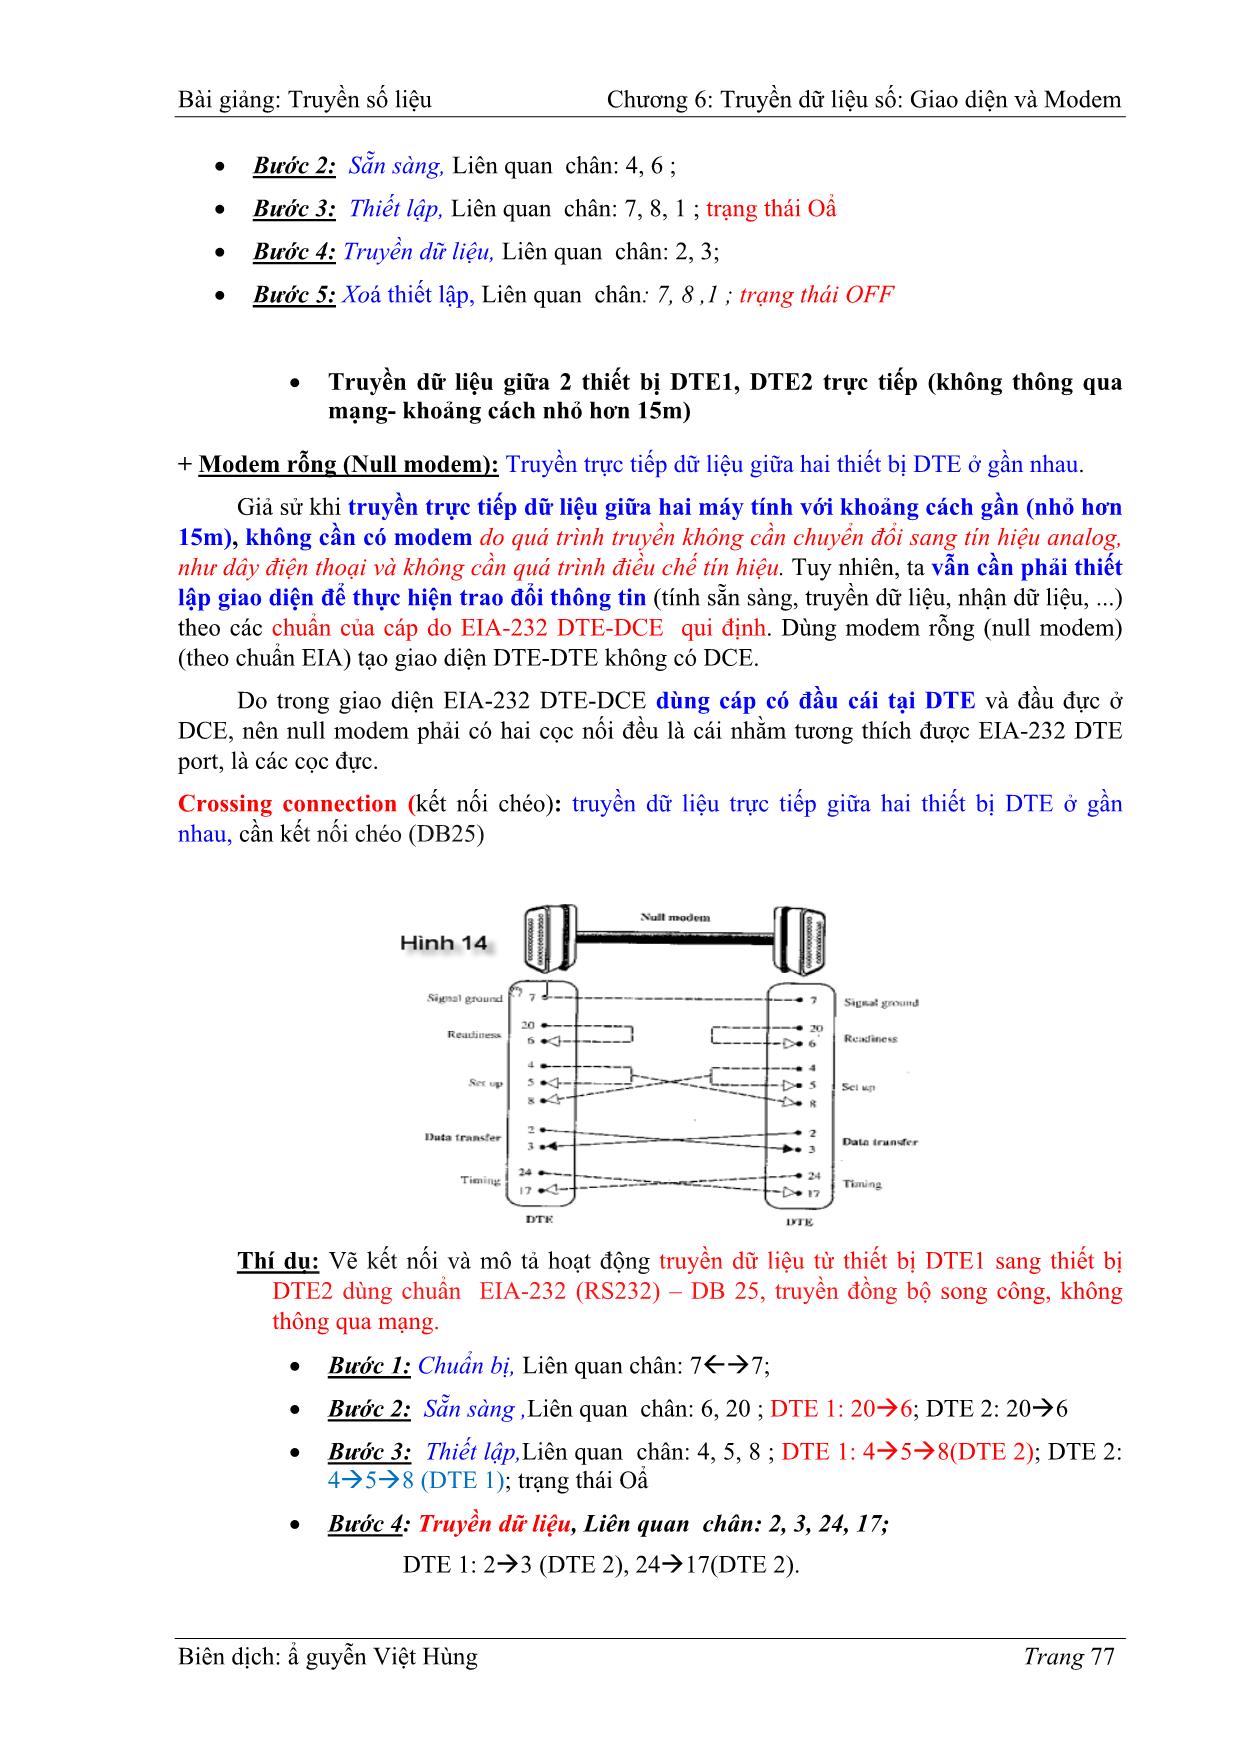 Bài giảng Truyền số liệu - Chương 6: Truyền dữ liệu số - Giao diện và Modem - Nguyễn Việt Hùng trang 8